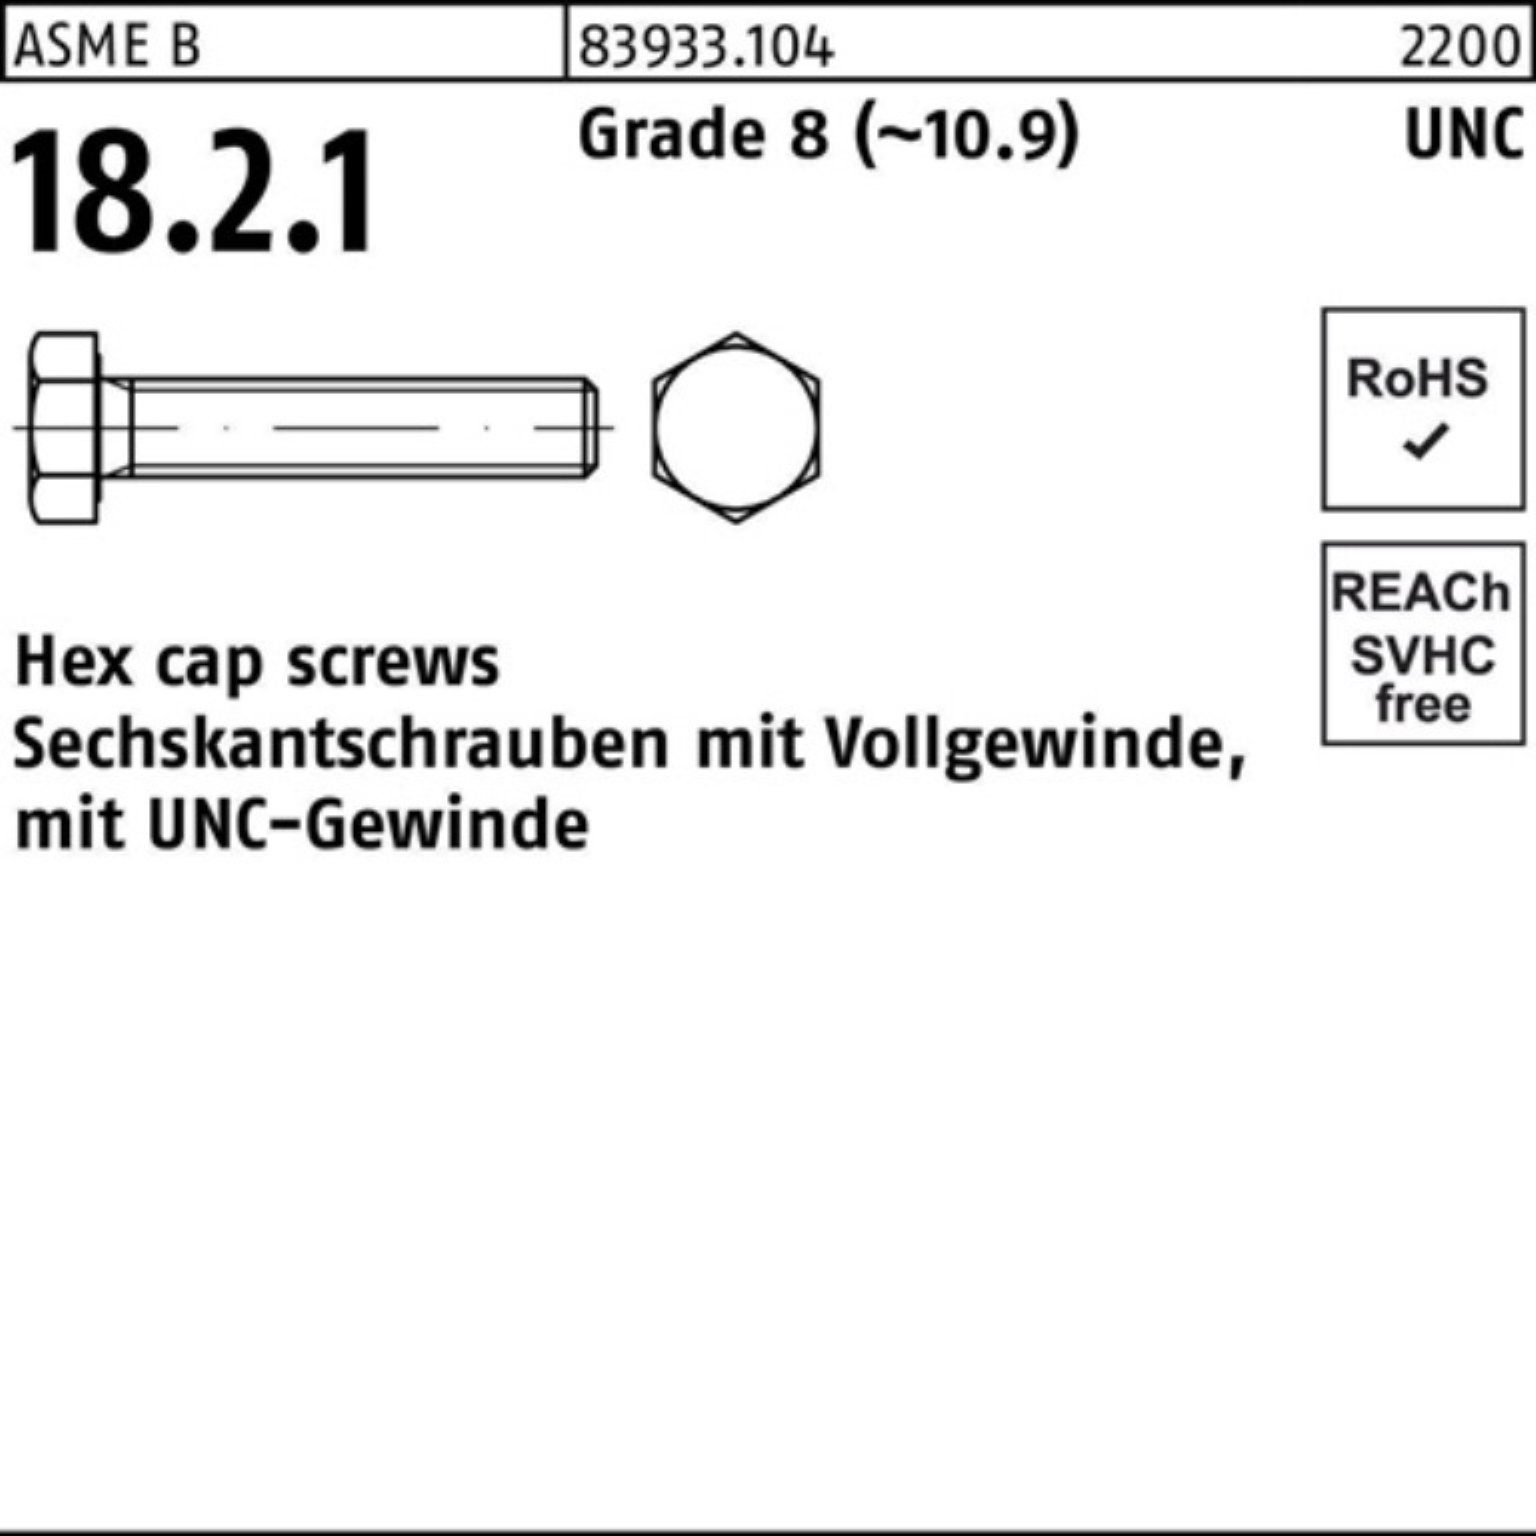 Reyher Sechskantschraube 100er Pack Sechskantschraube R 83933 UNC-Gewinde VG 3/4x 1 3/4 Grade 8